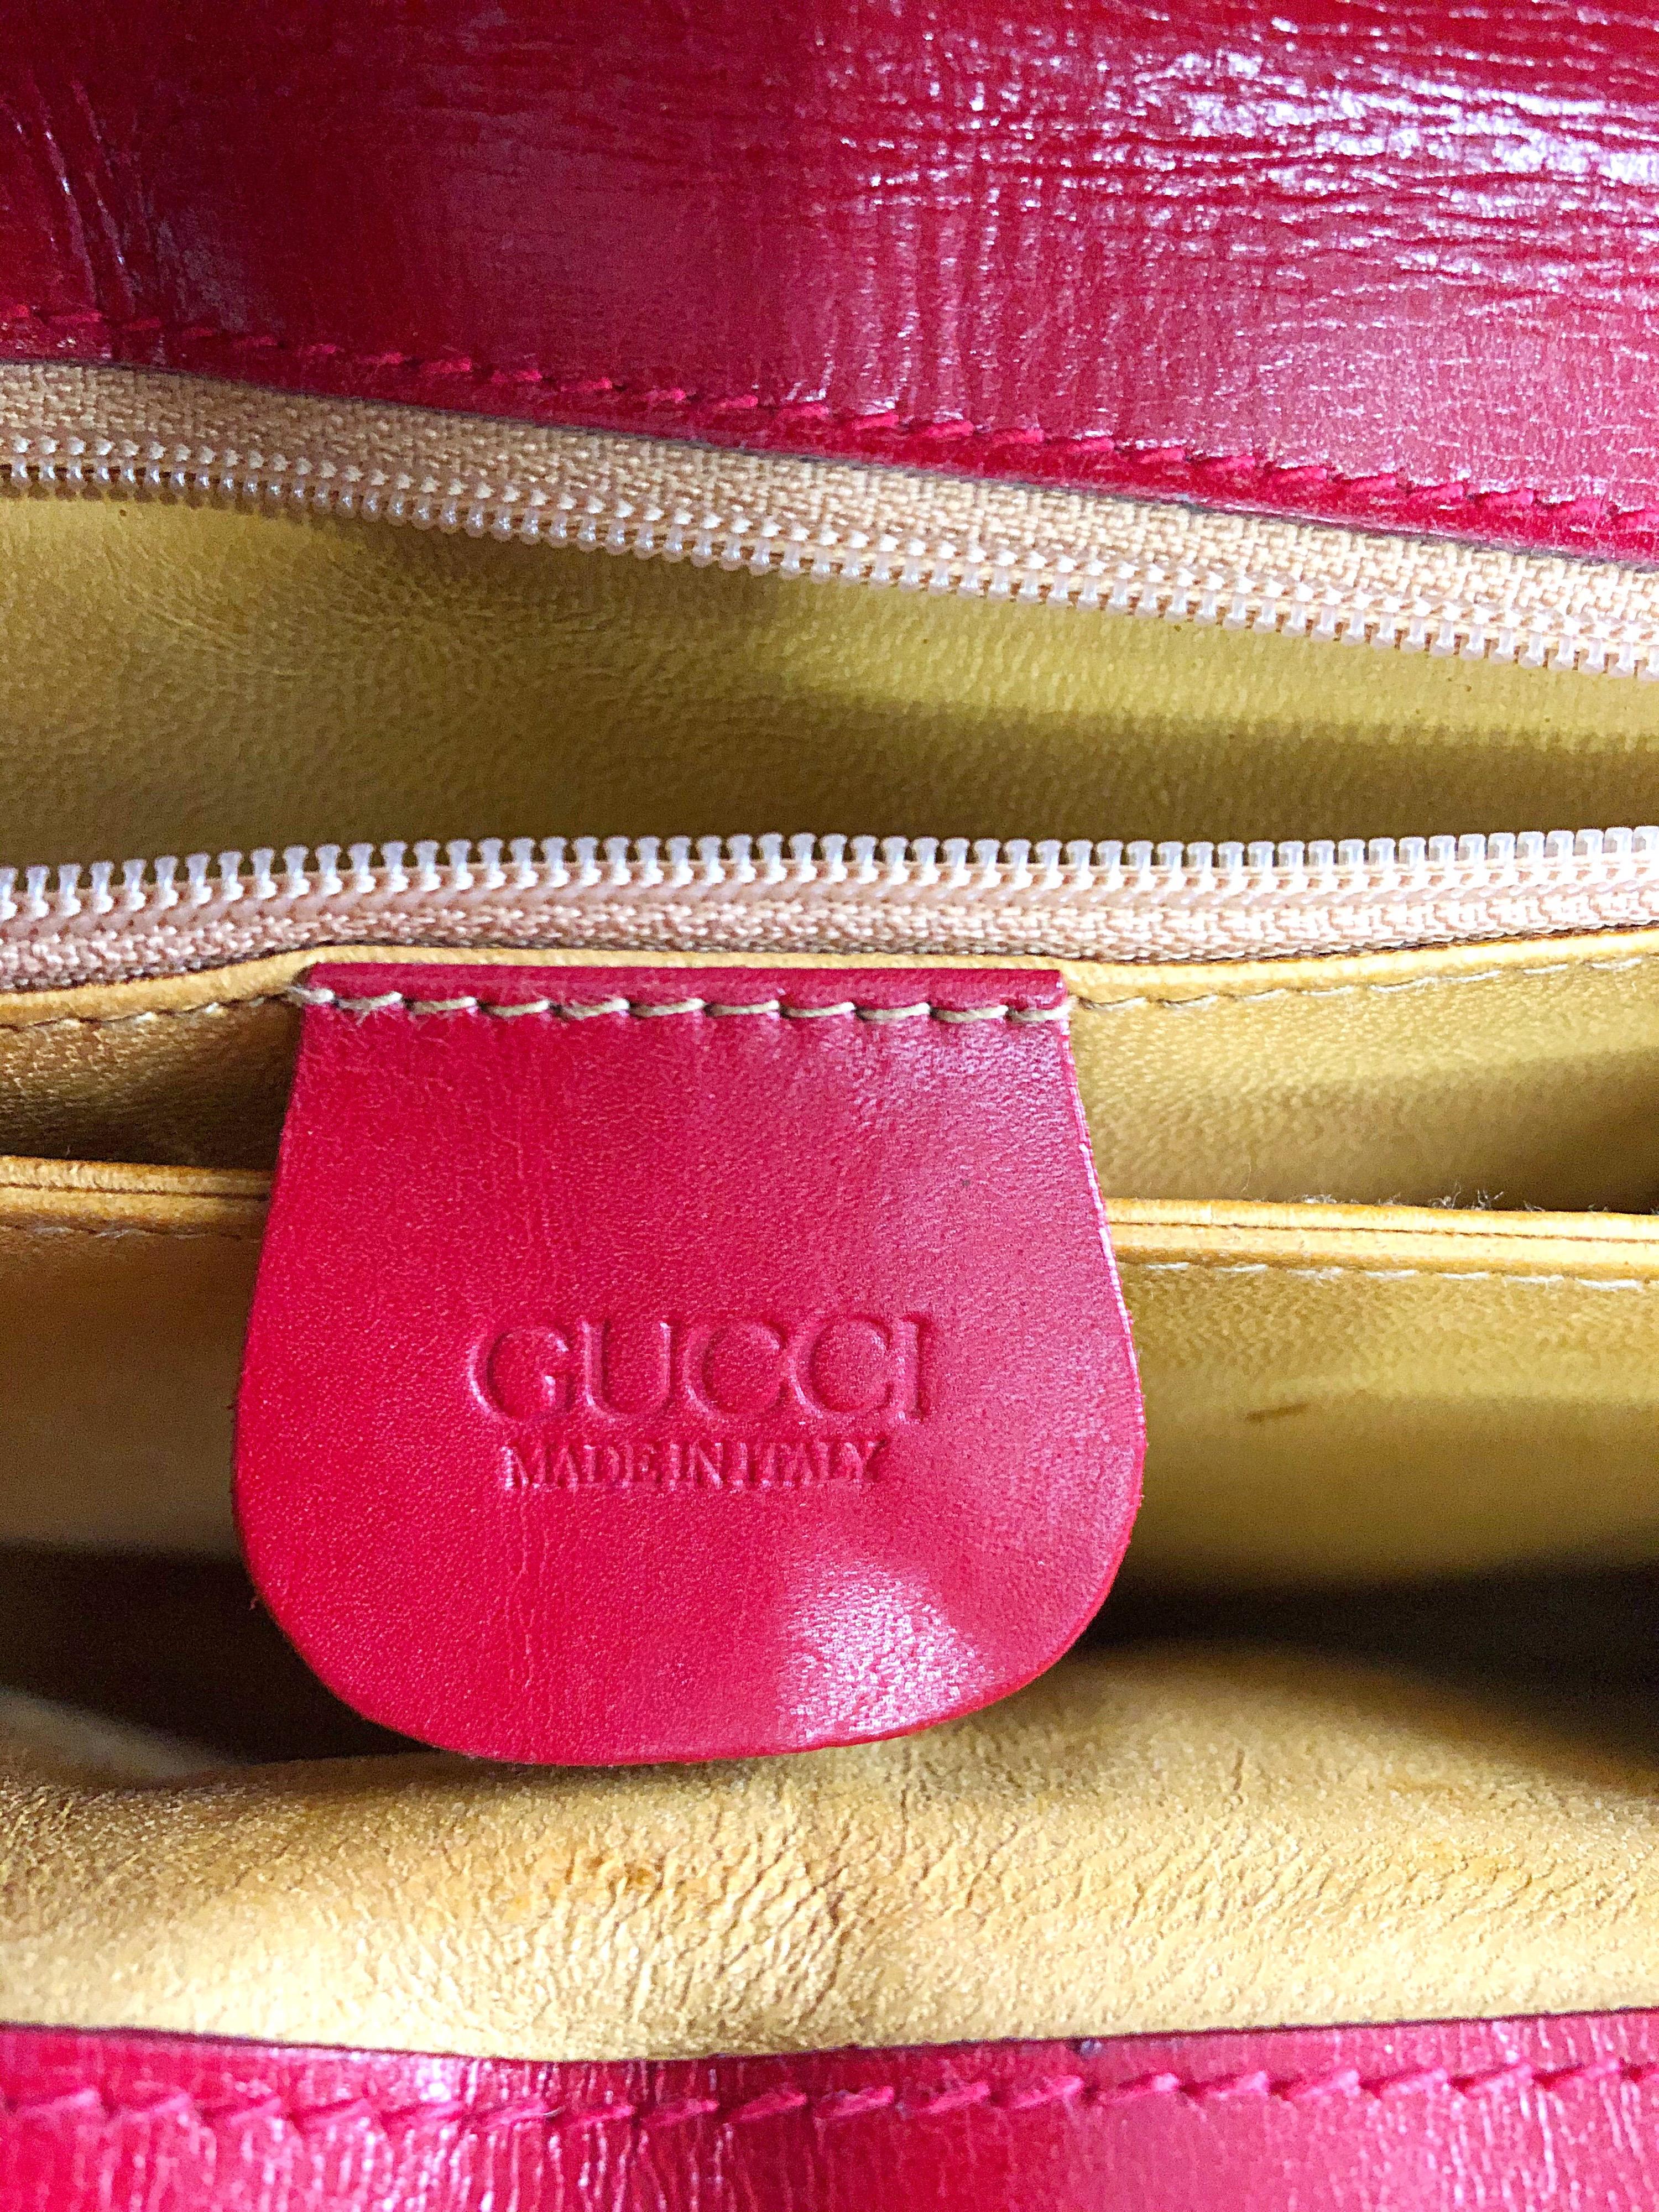 vintage gucci handbags 1990